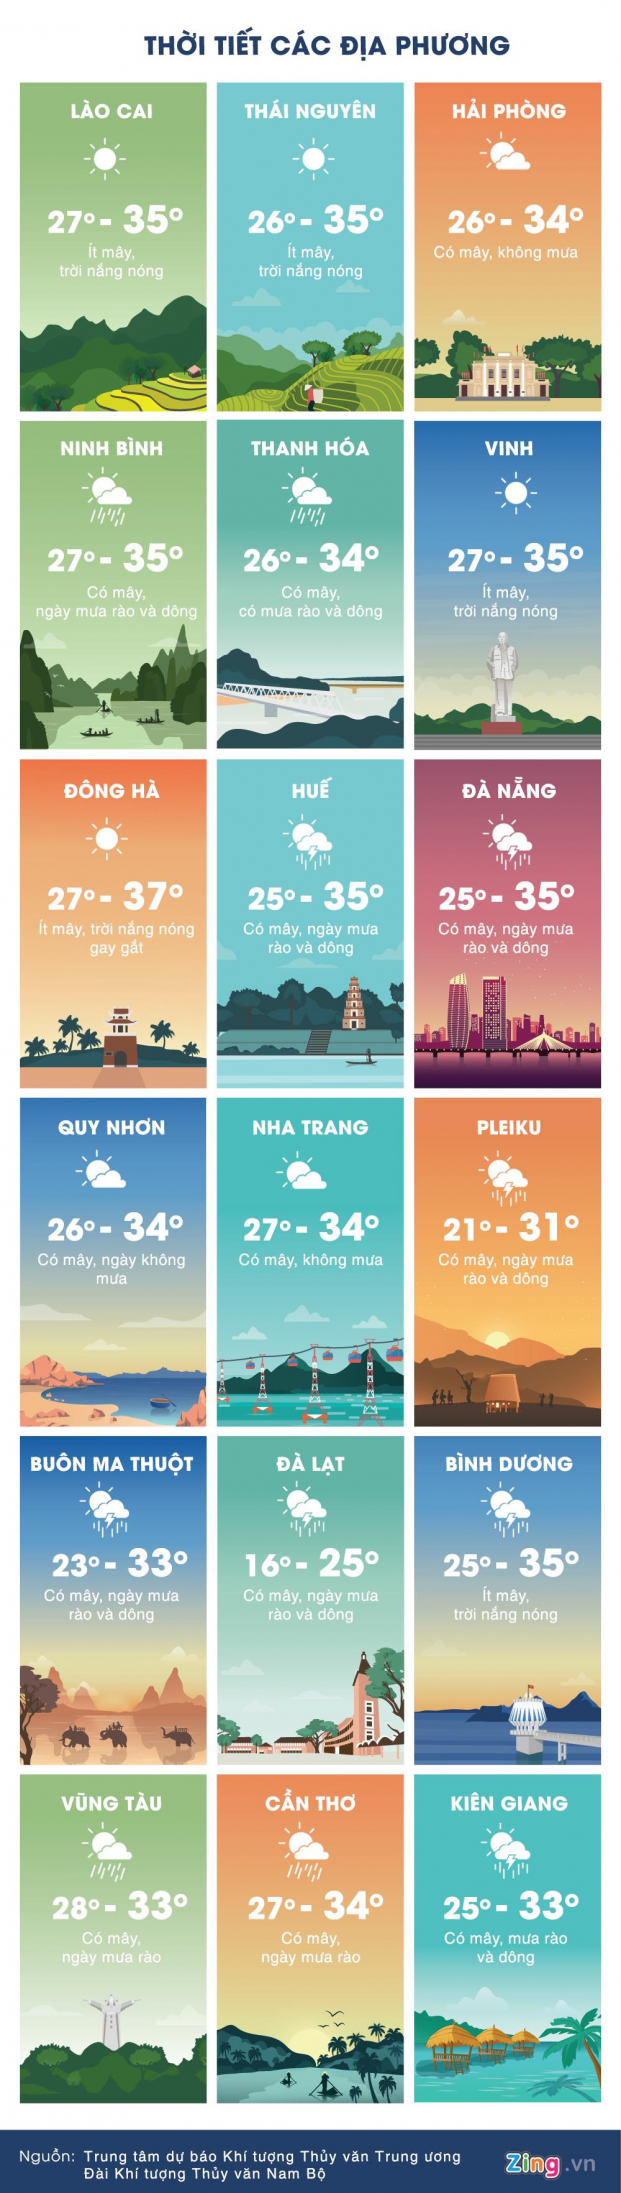 Dự báo thời tiết ngày 25/5/2019: Hà Nội ngày nắng nóng 38 độ, đêm mưa rào 2